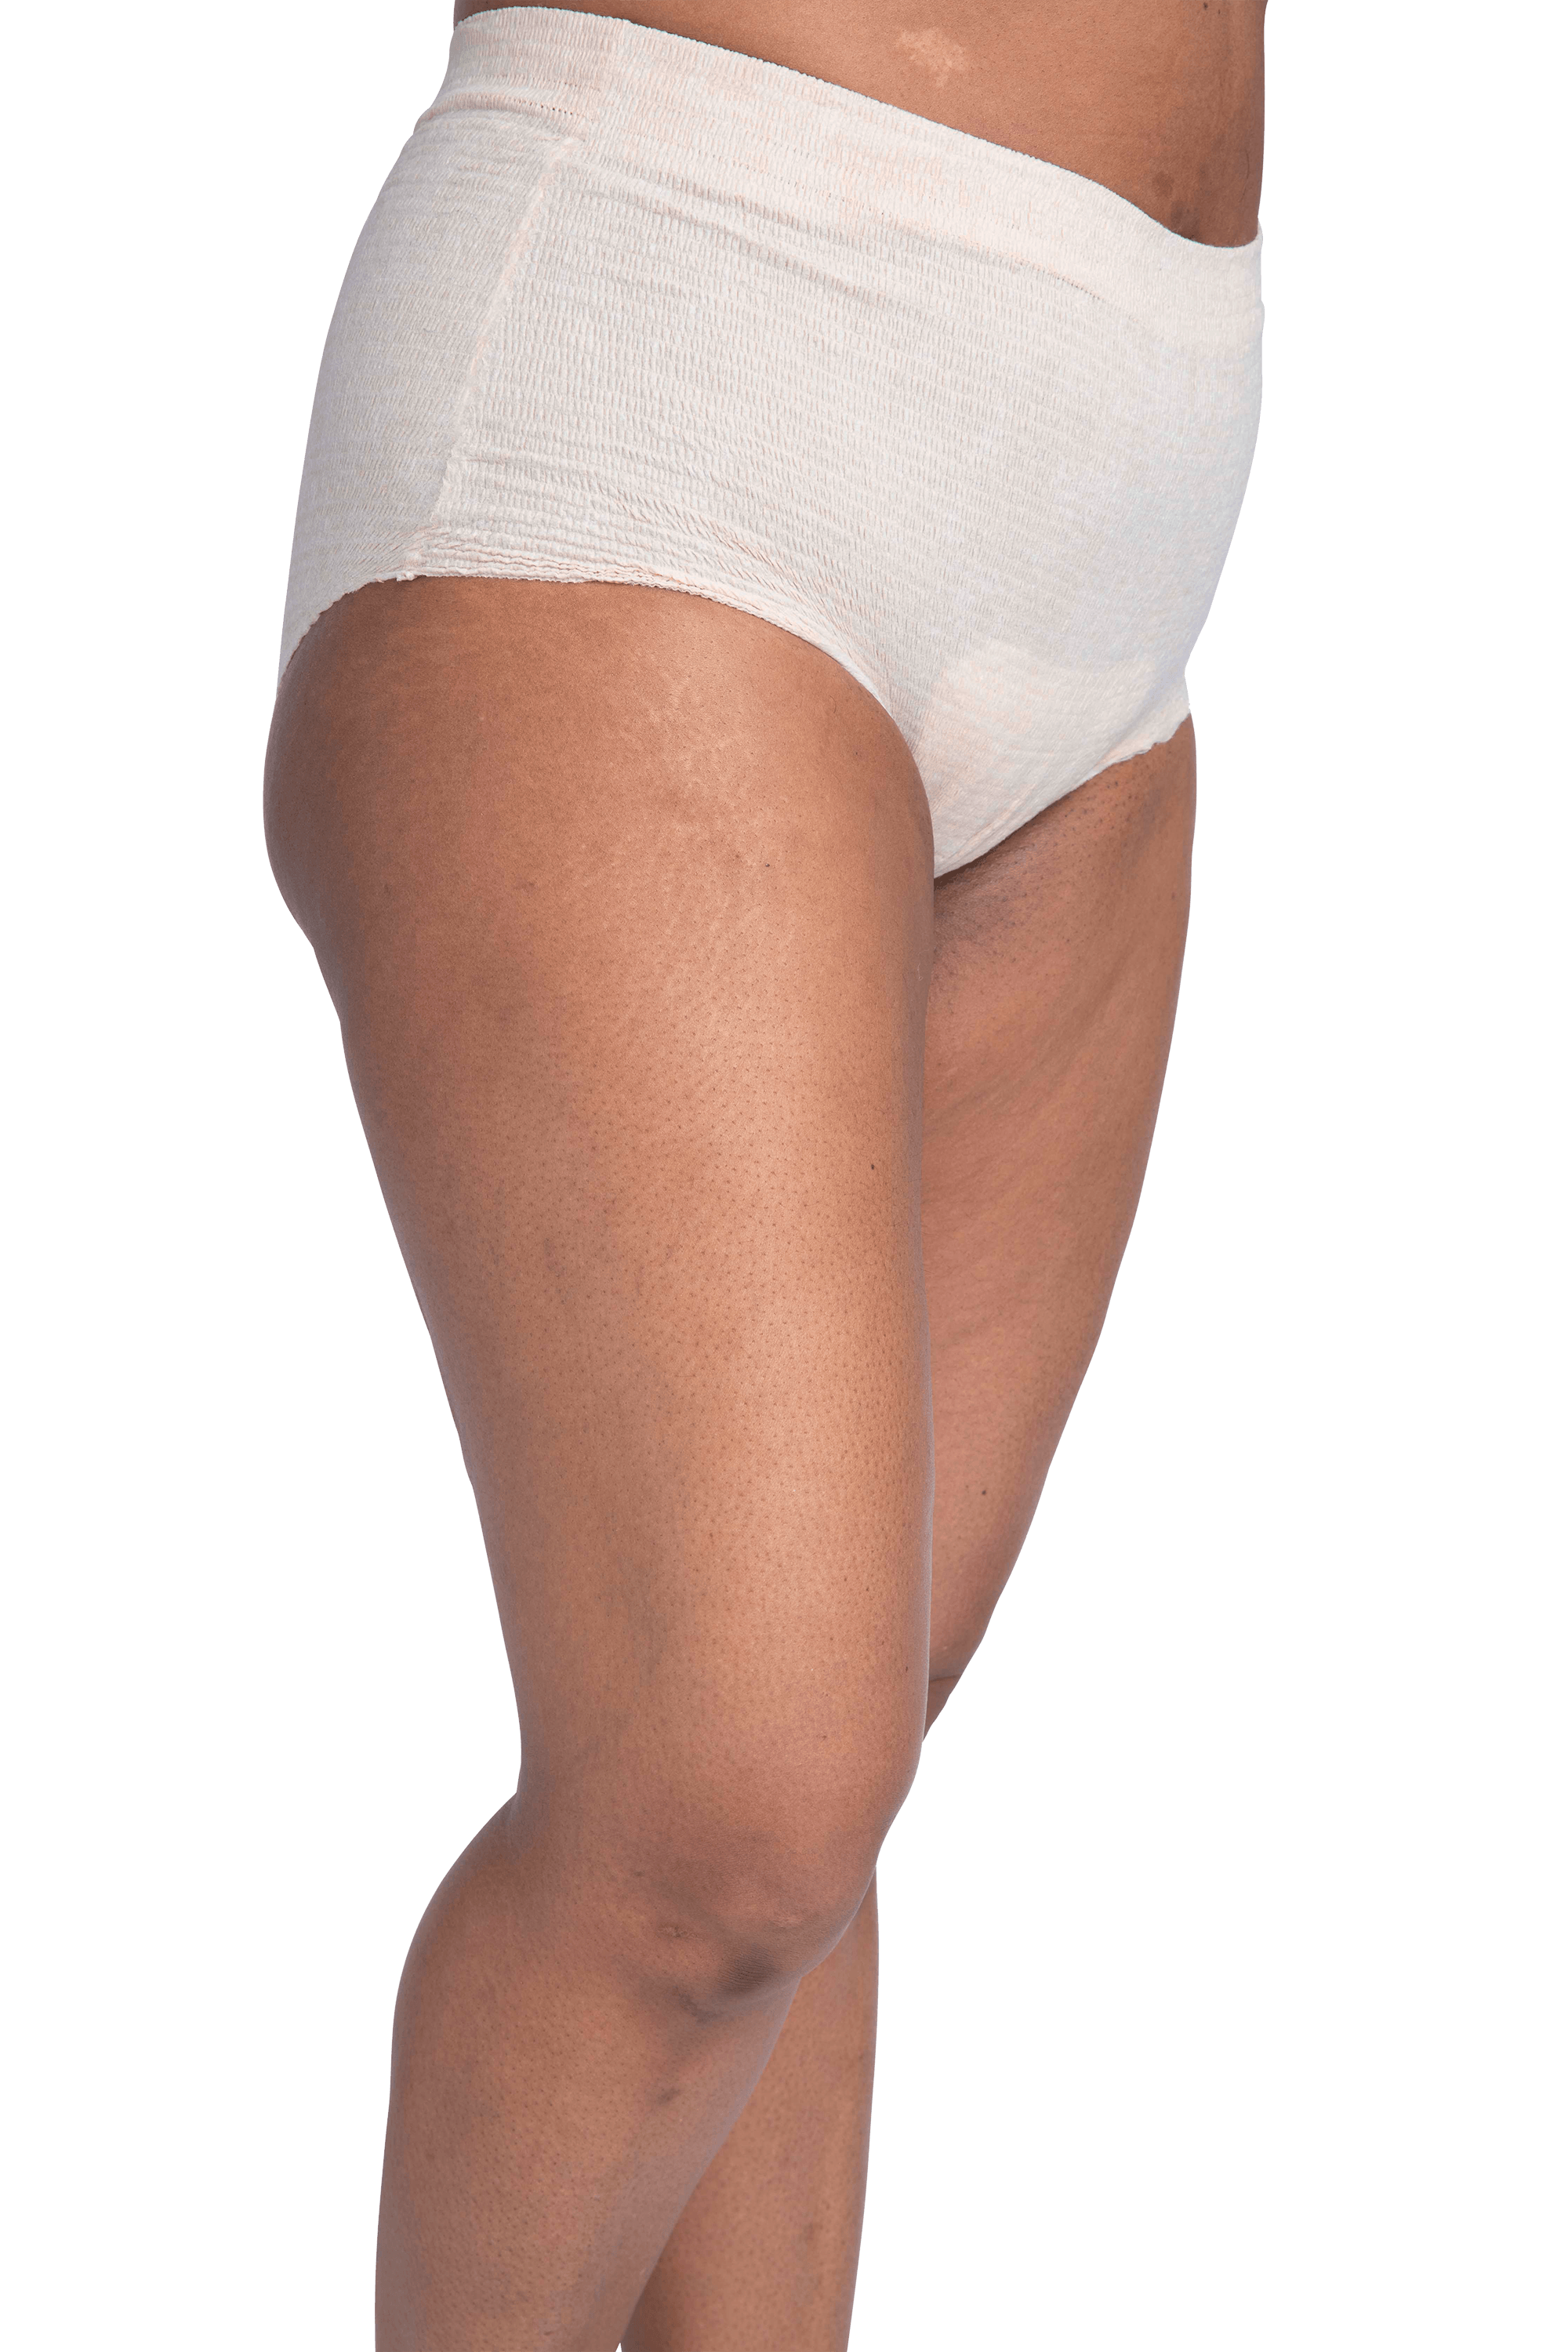 Premium Incontinence Underwear